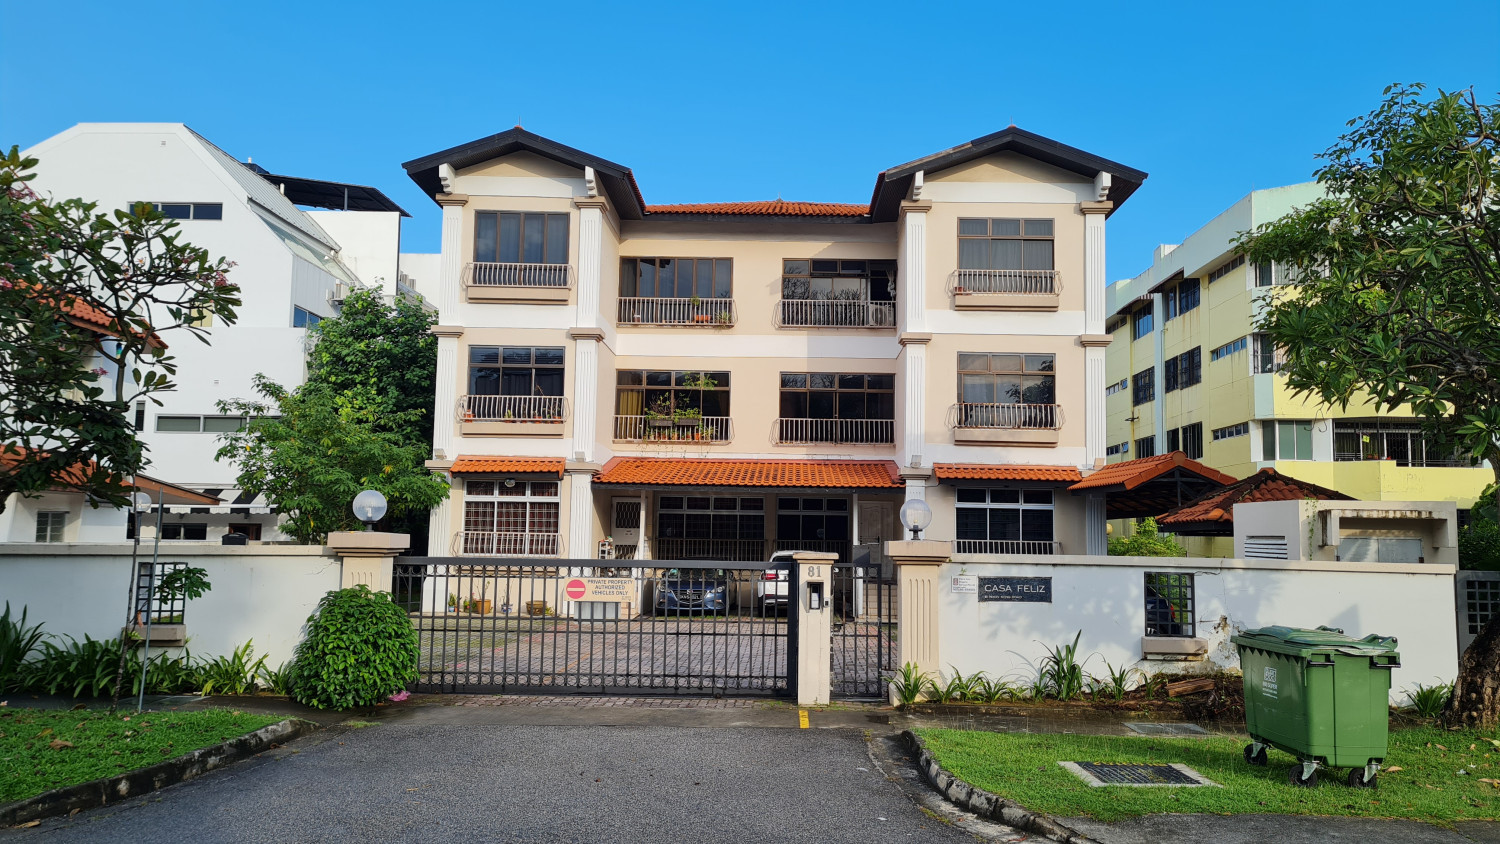 Casa Feliz on Koon Seng Road up for collective sale at $23 mil - Property News